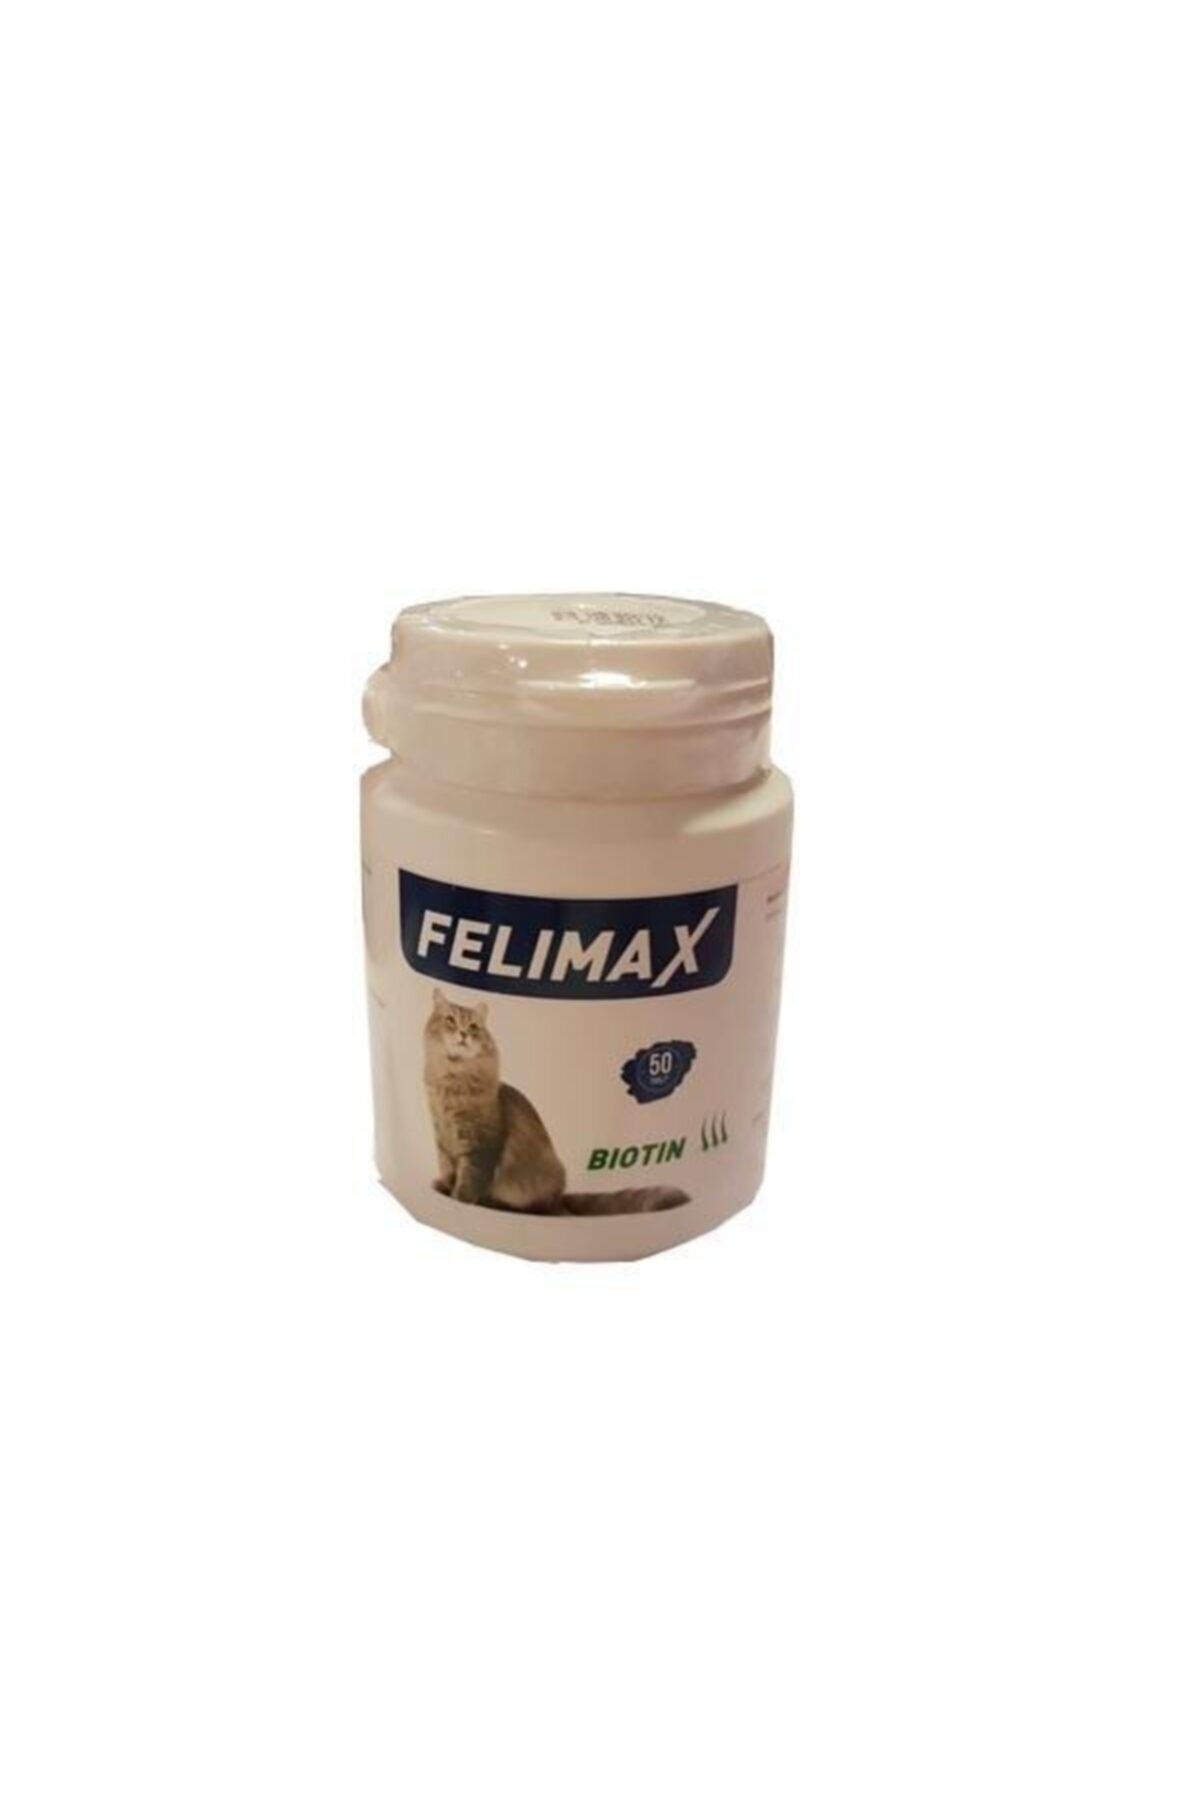 Felimax Biotin Kedi Vitamin Tableti (50 Tablet)